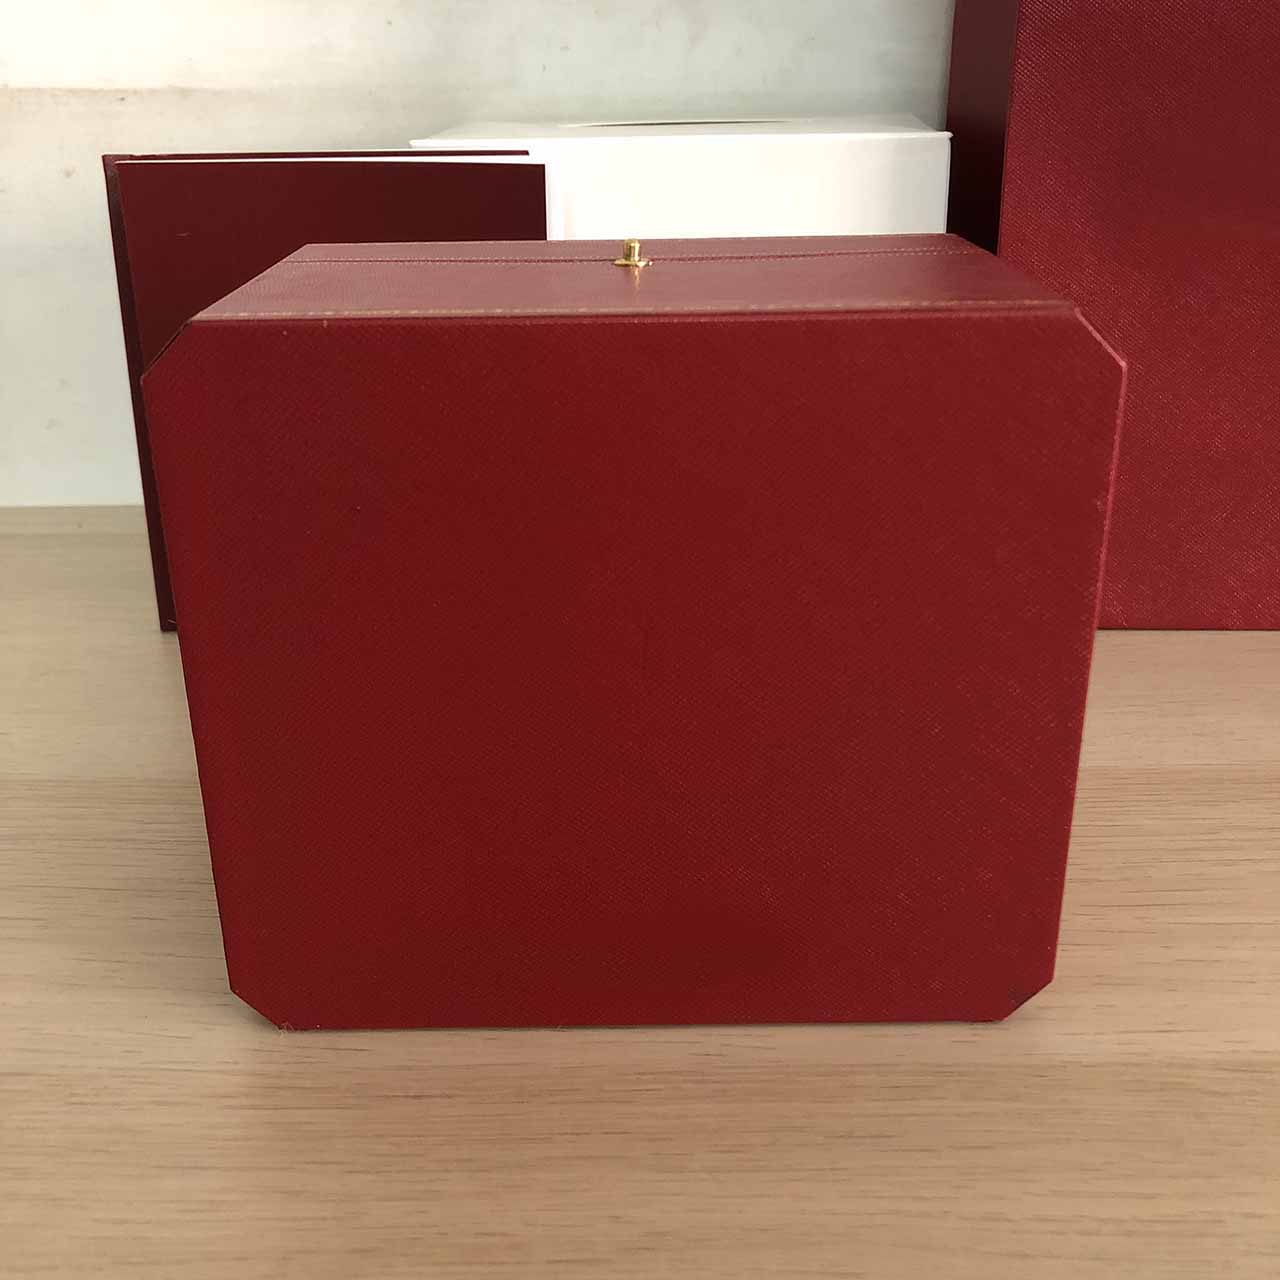 Varios relojes caja coleccionista de lujo calidad de alta gama de madera para folleto tarjeta etiqueta archivo bolsa hombres reloj cajas rojas Gift214u